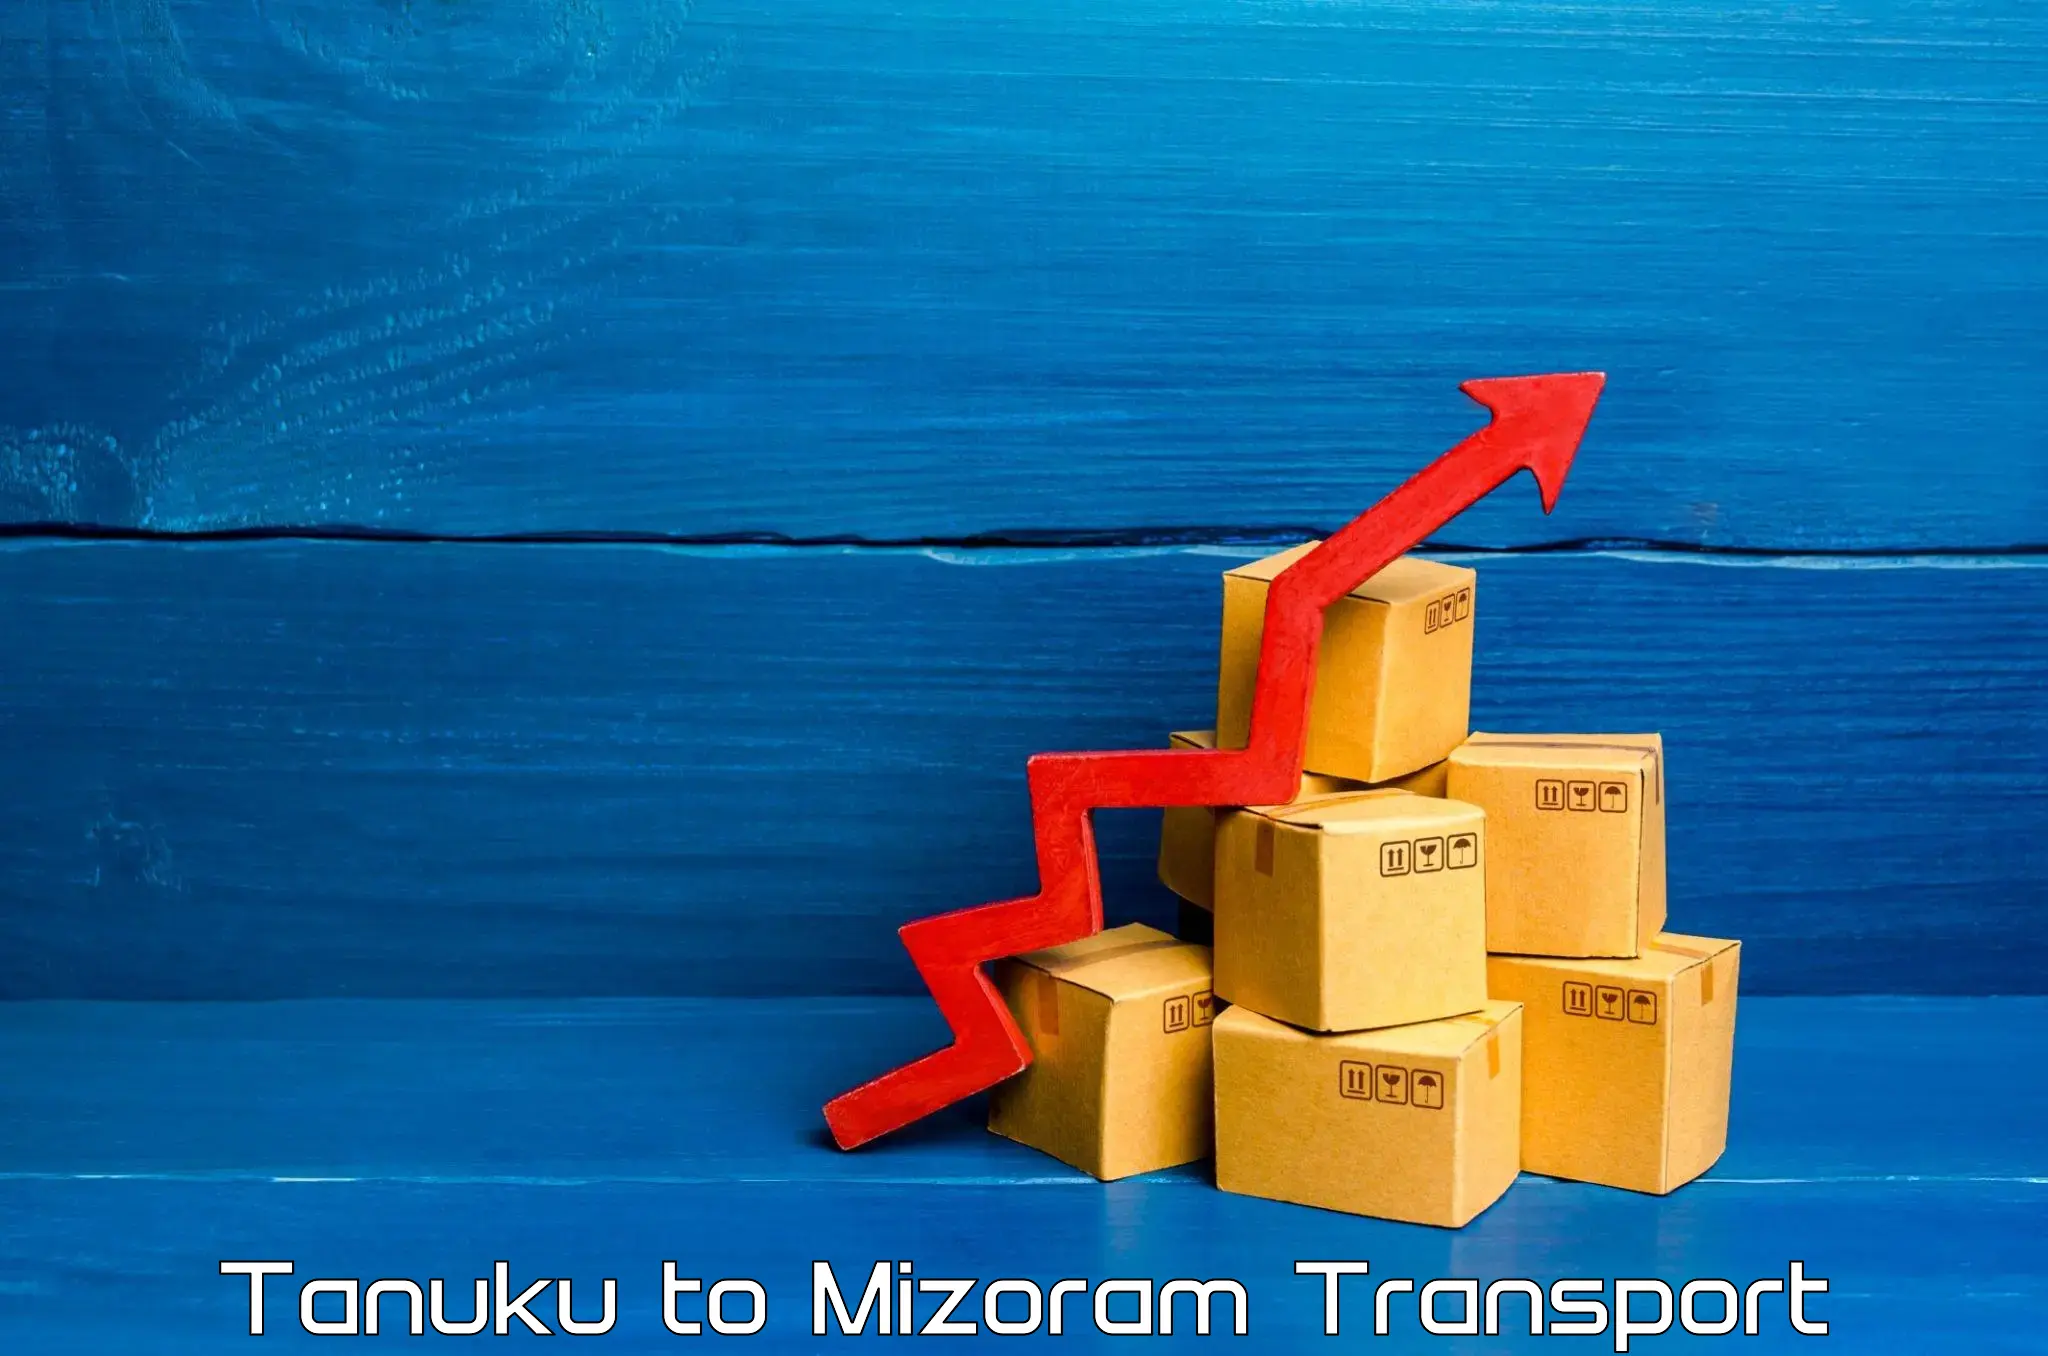 Transport in sharing Tanuku to Saitual